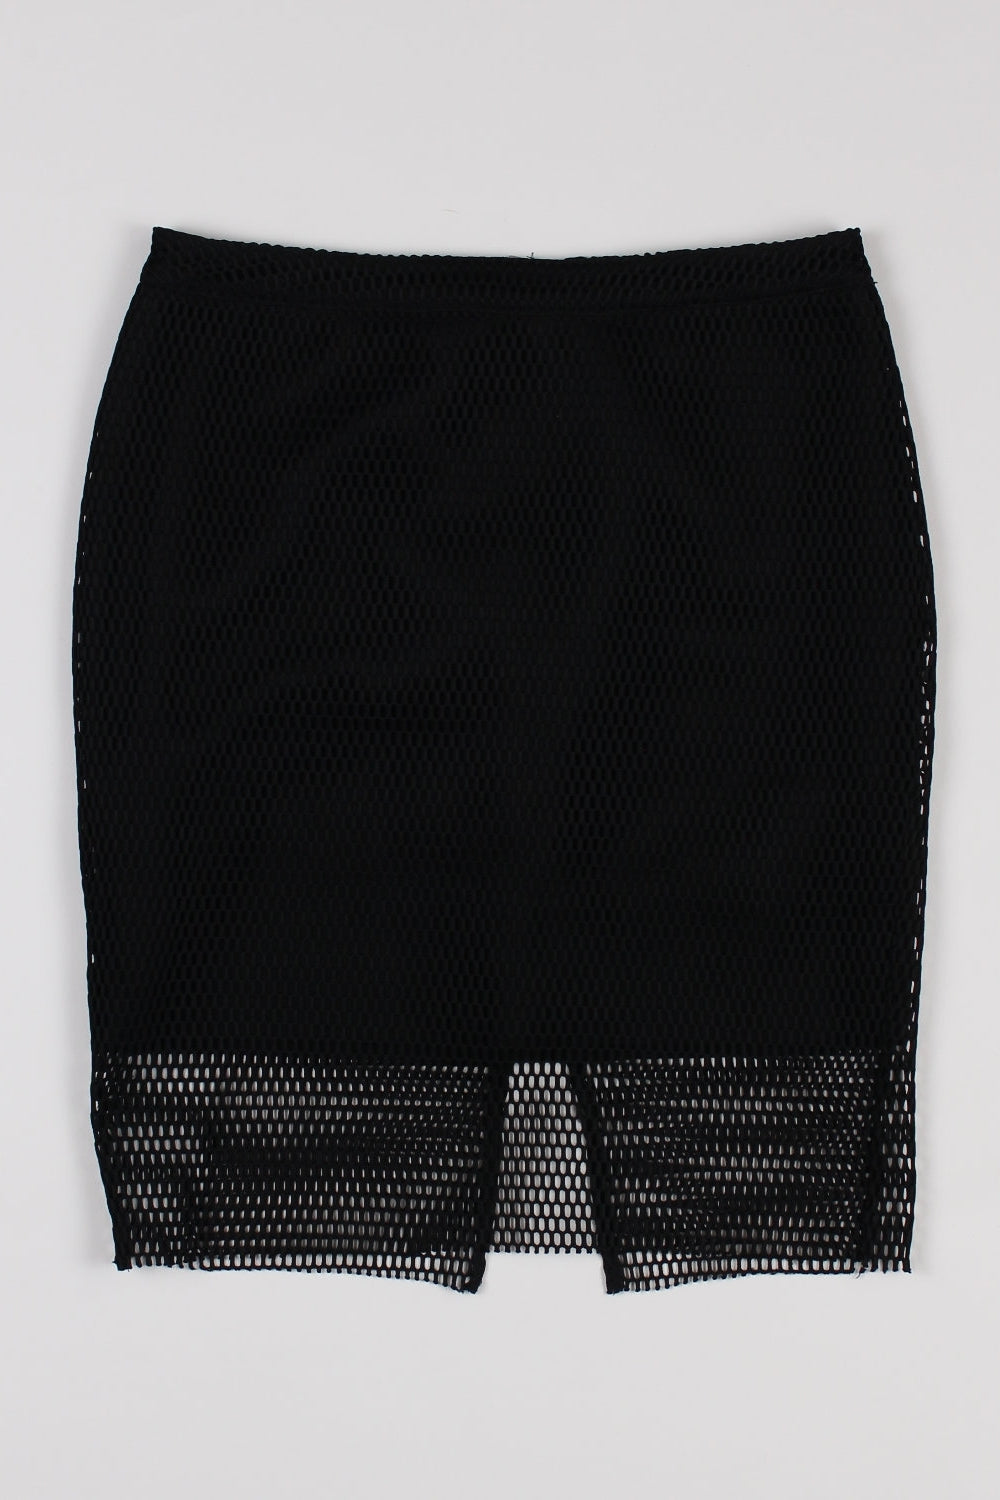 H&M Black Mesh Skirt 10